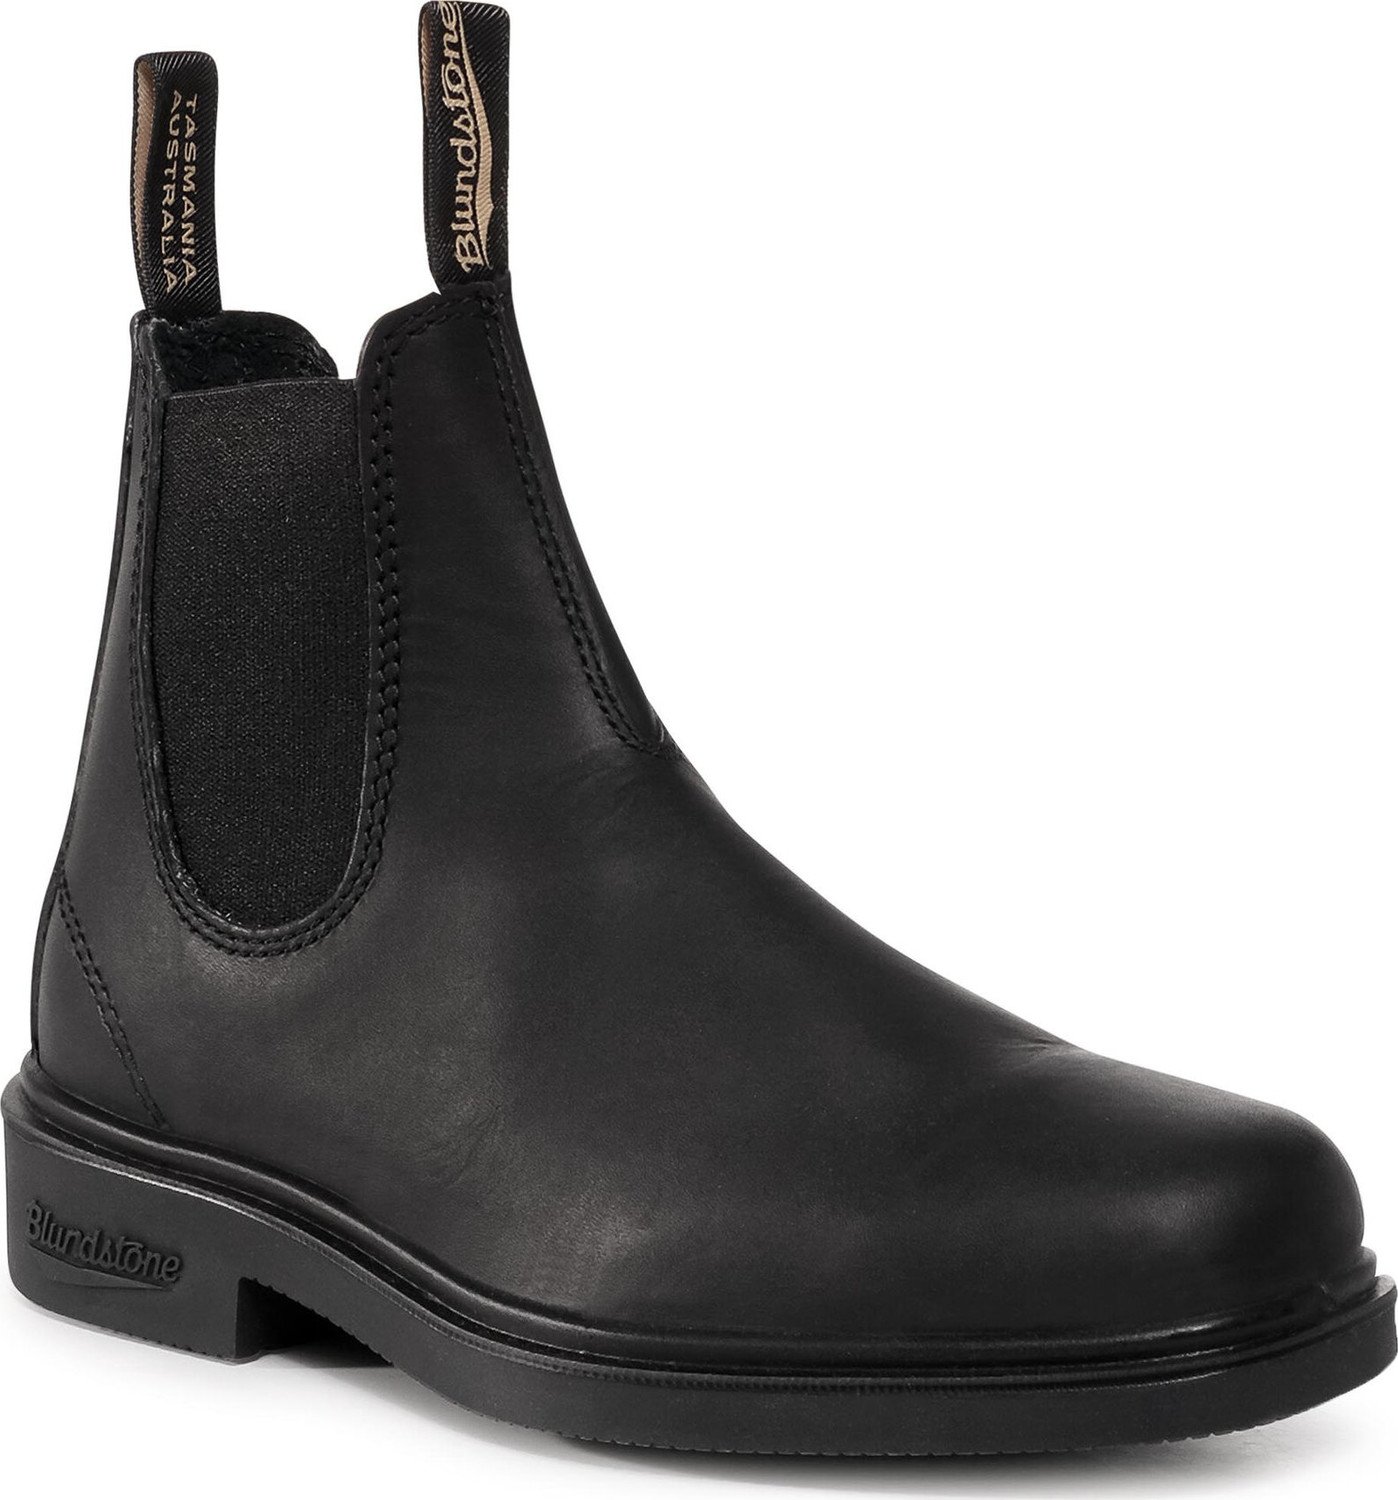 Kotníková obuv s elastickým prvkem Blundstone 063 Black